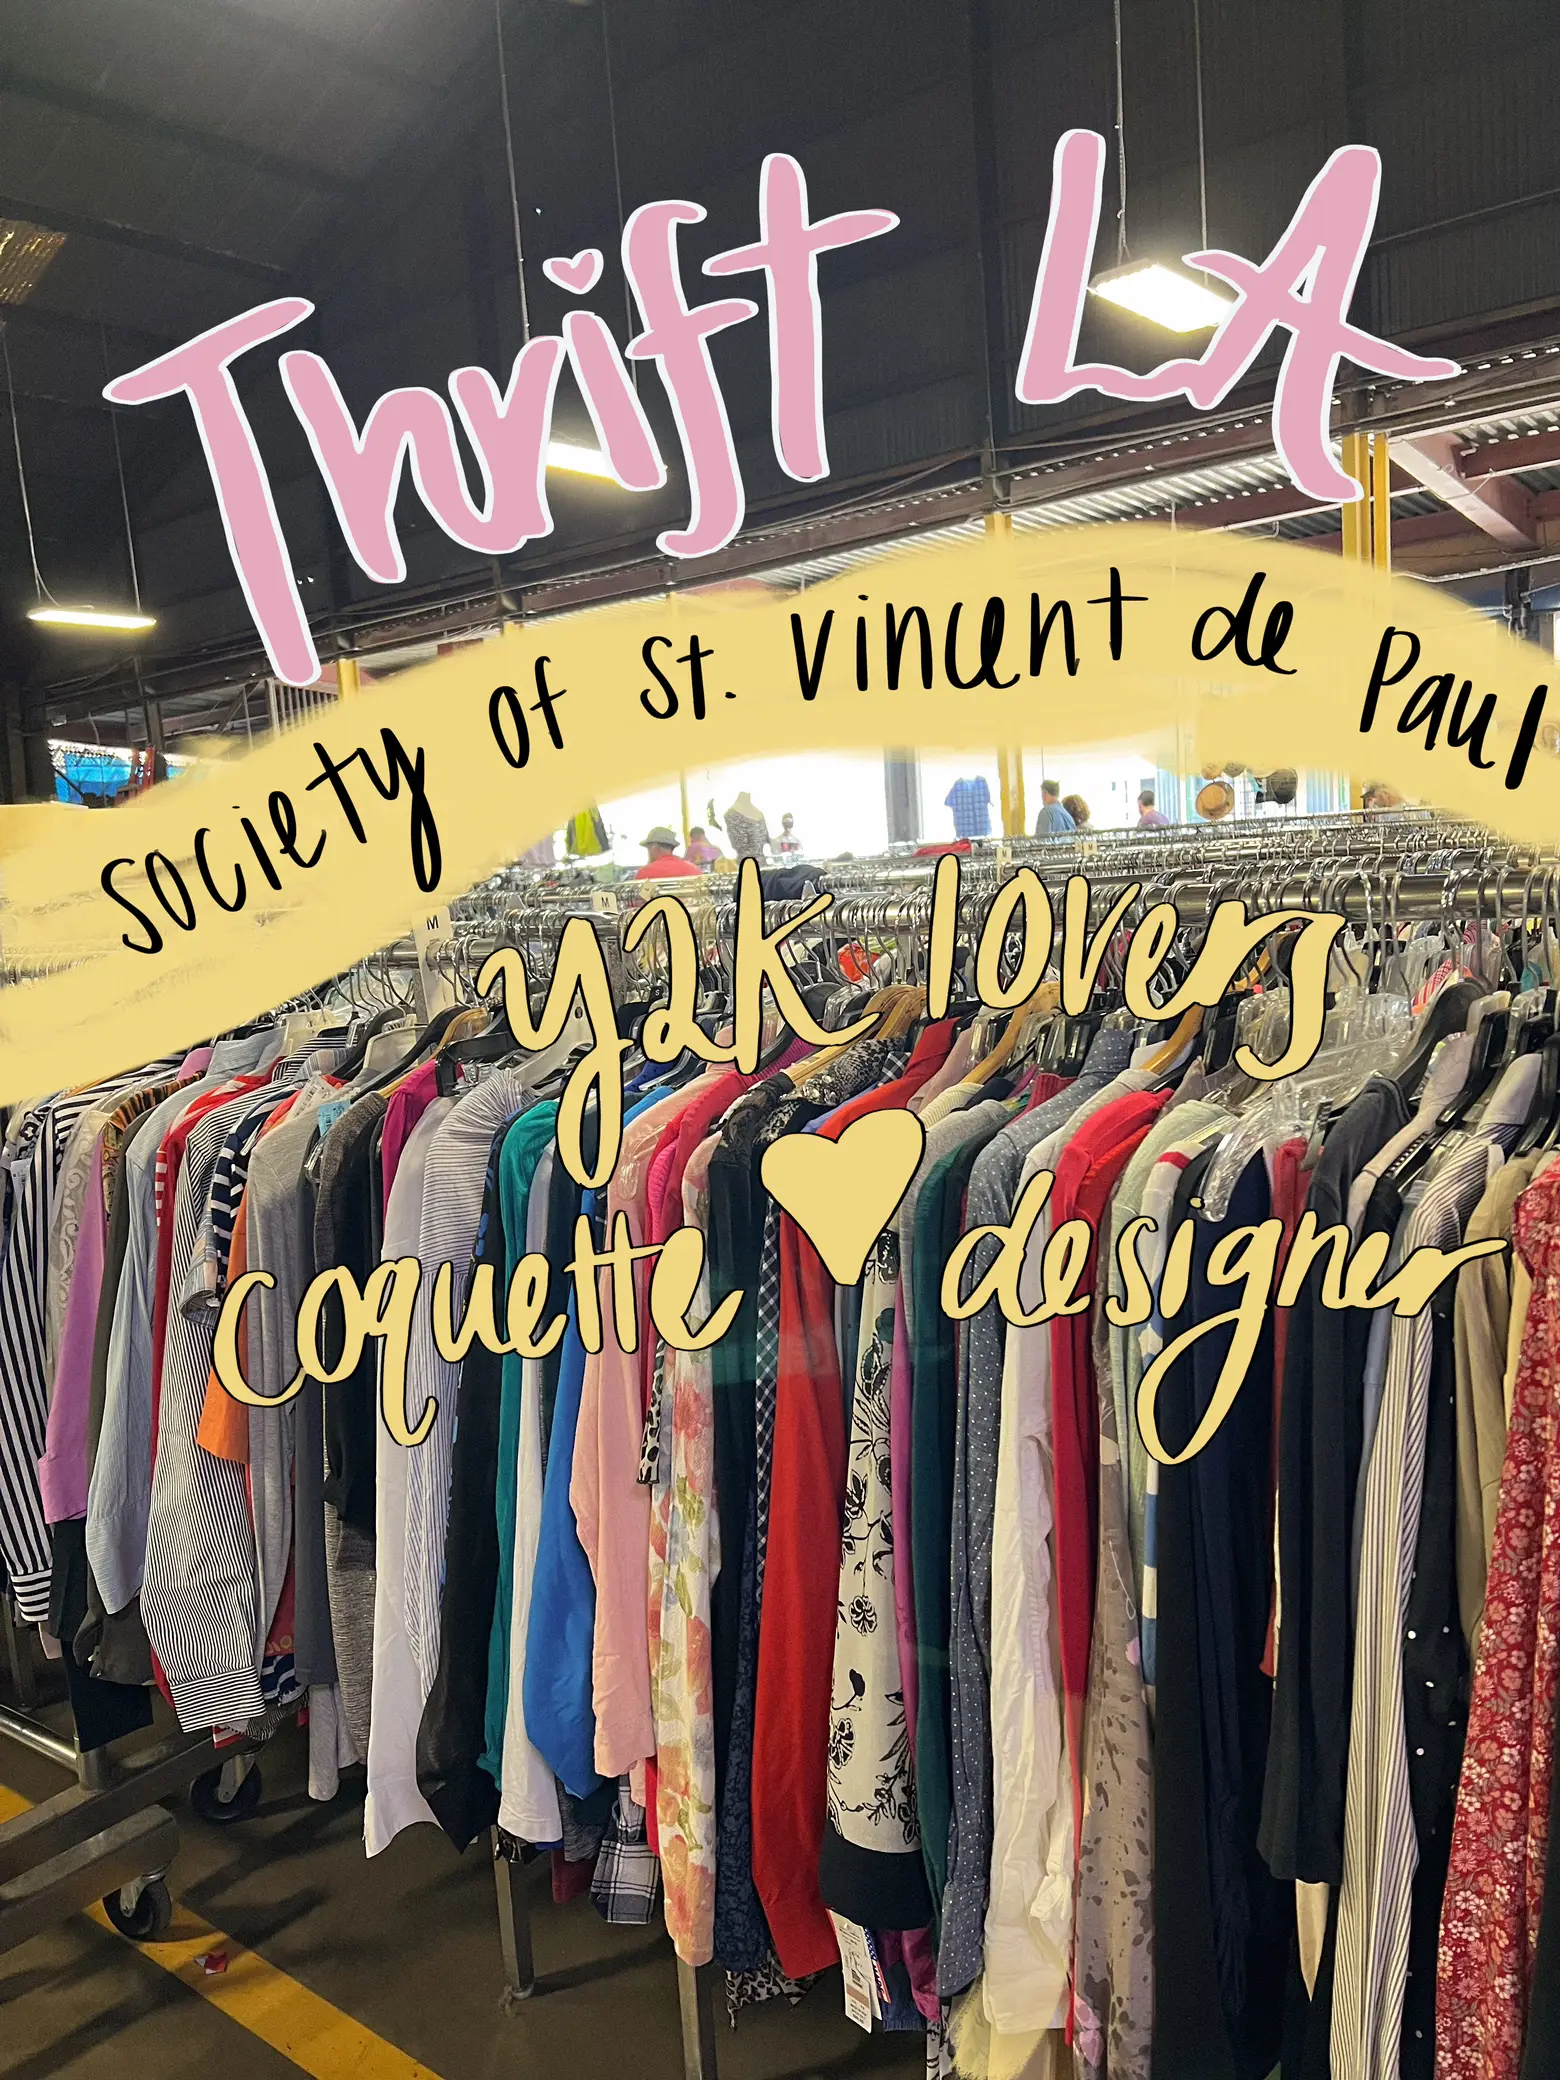 St. Vincent de Paul in St. Louis launches online thrift store